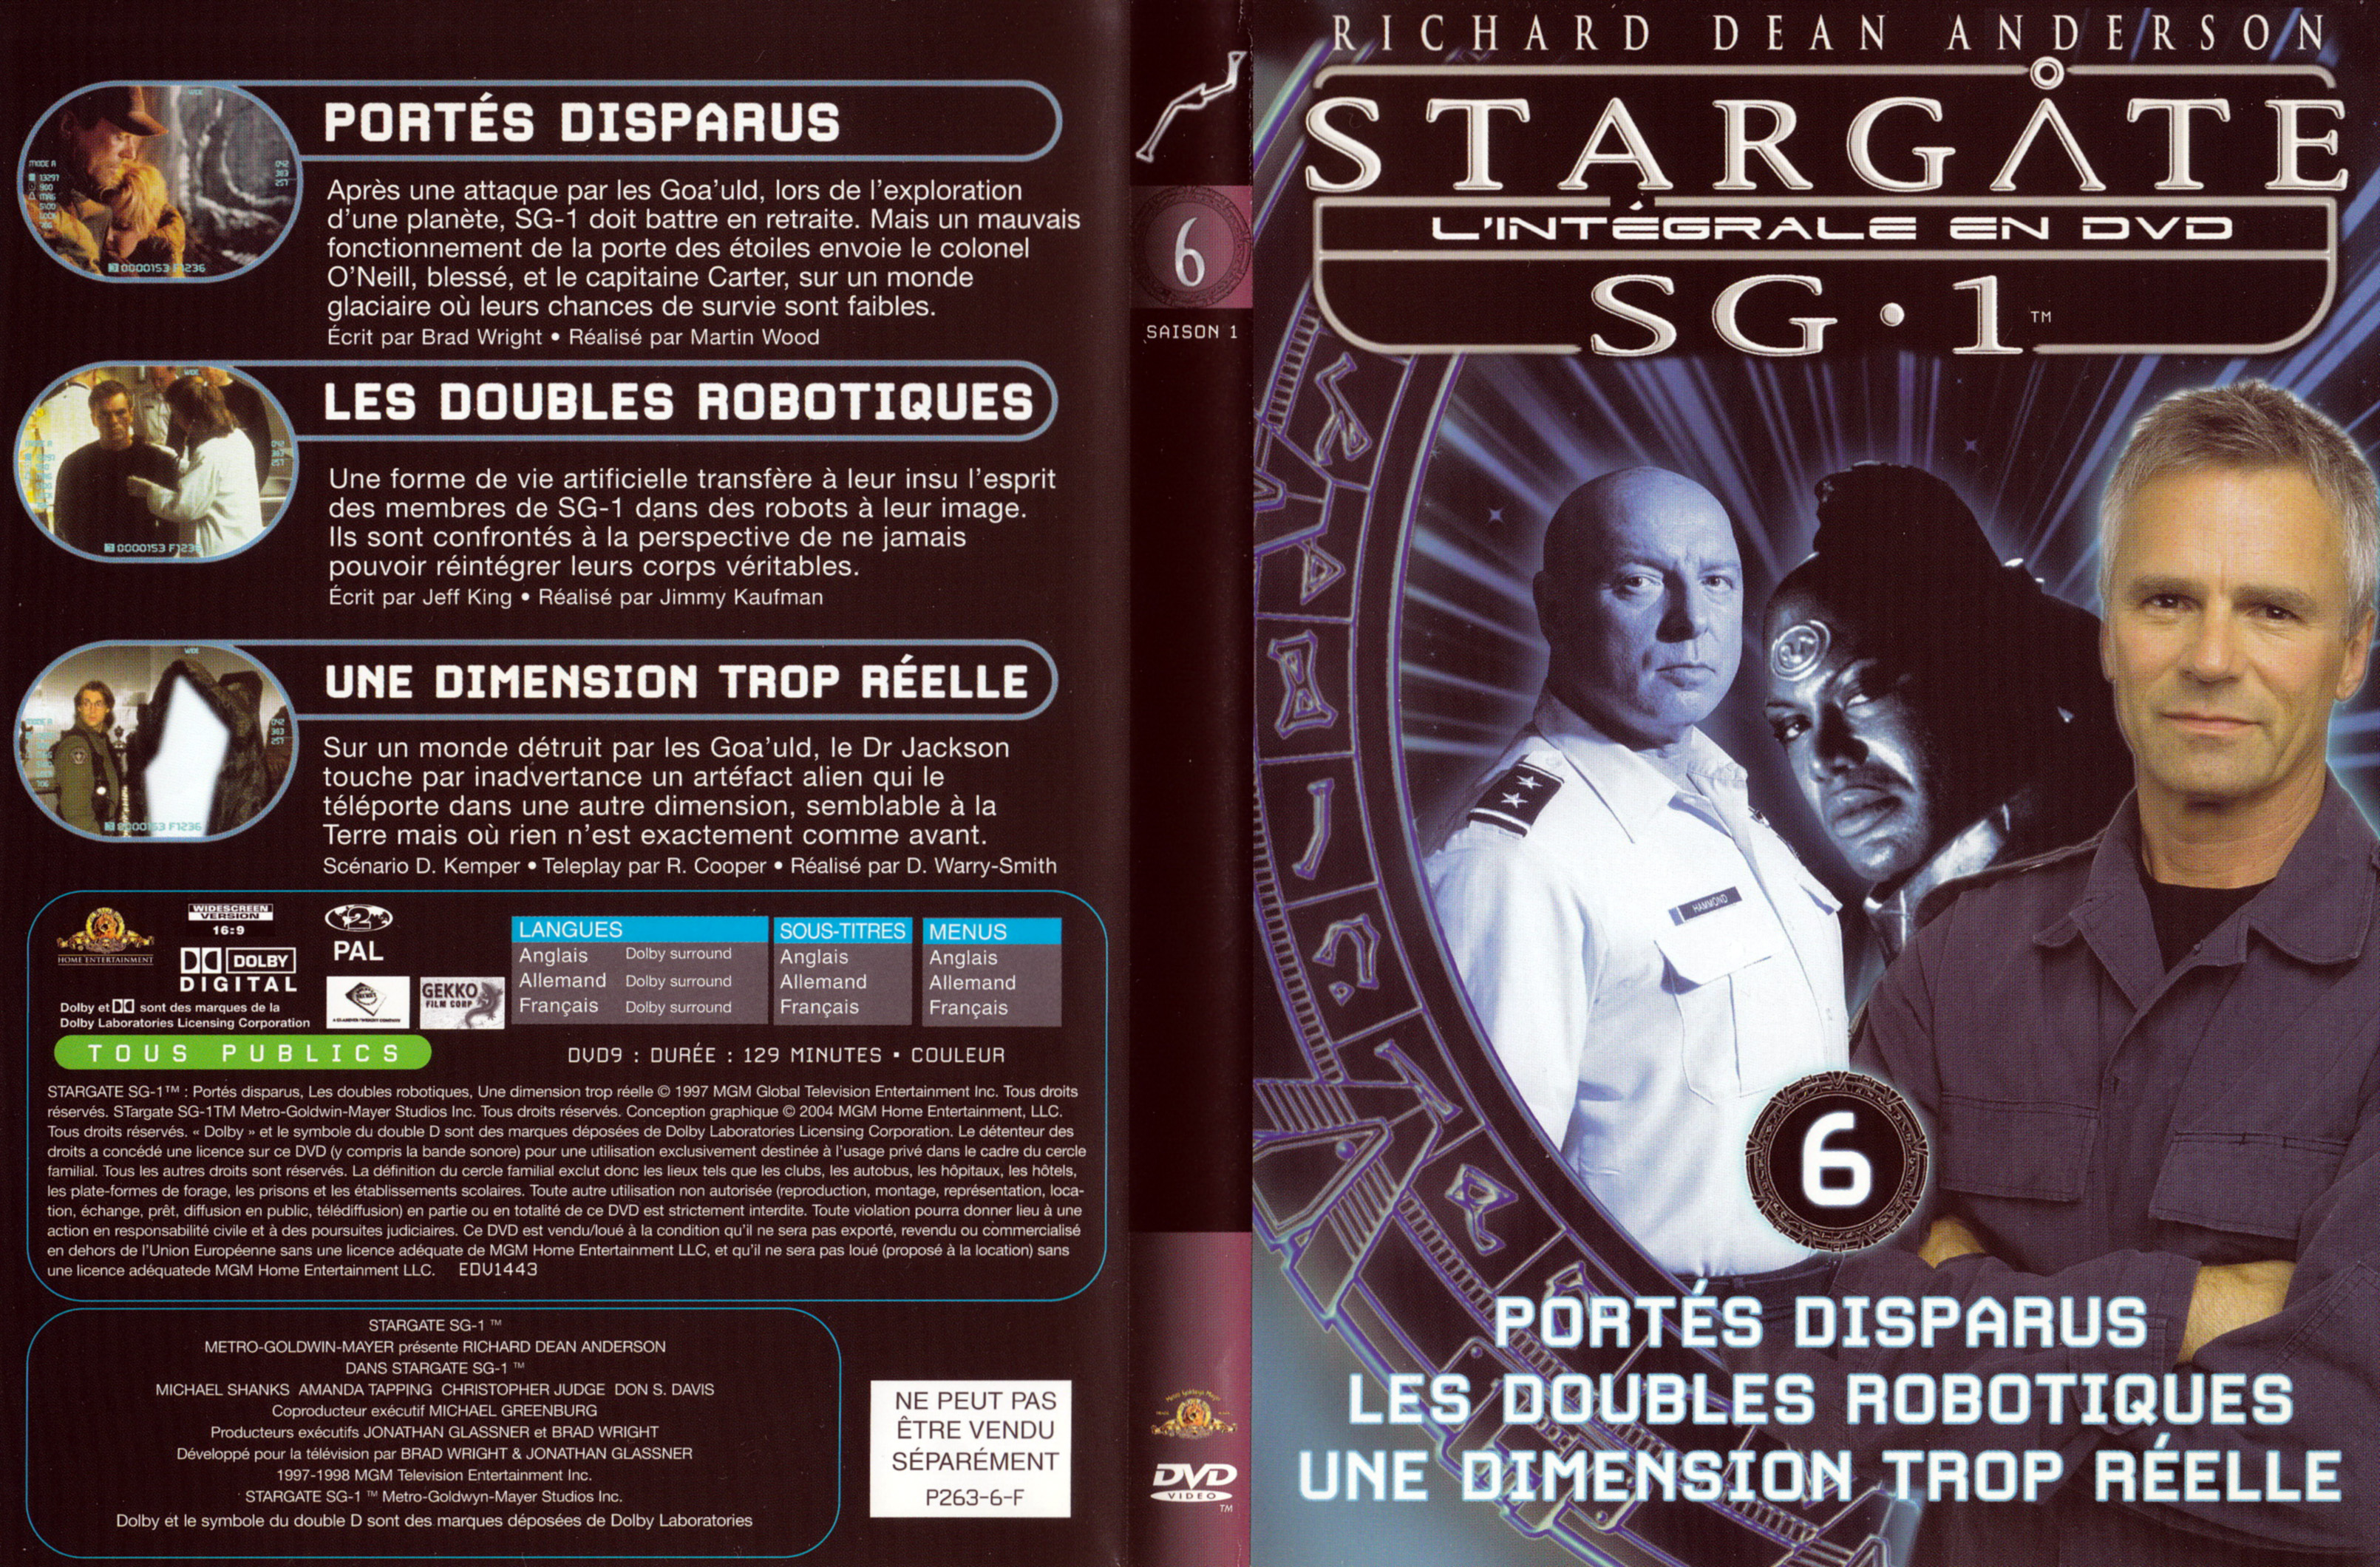 Jaquette DVD Stargate SG1 Intgrale Saison 1 vol 06